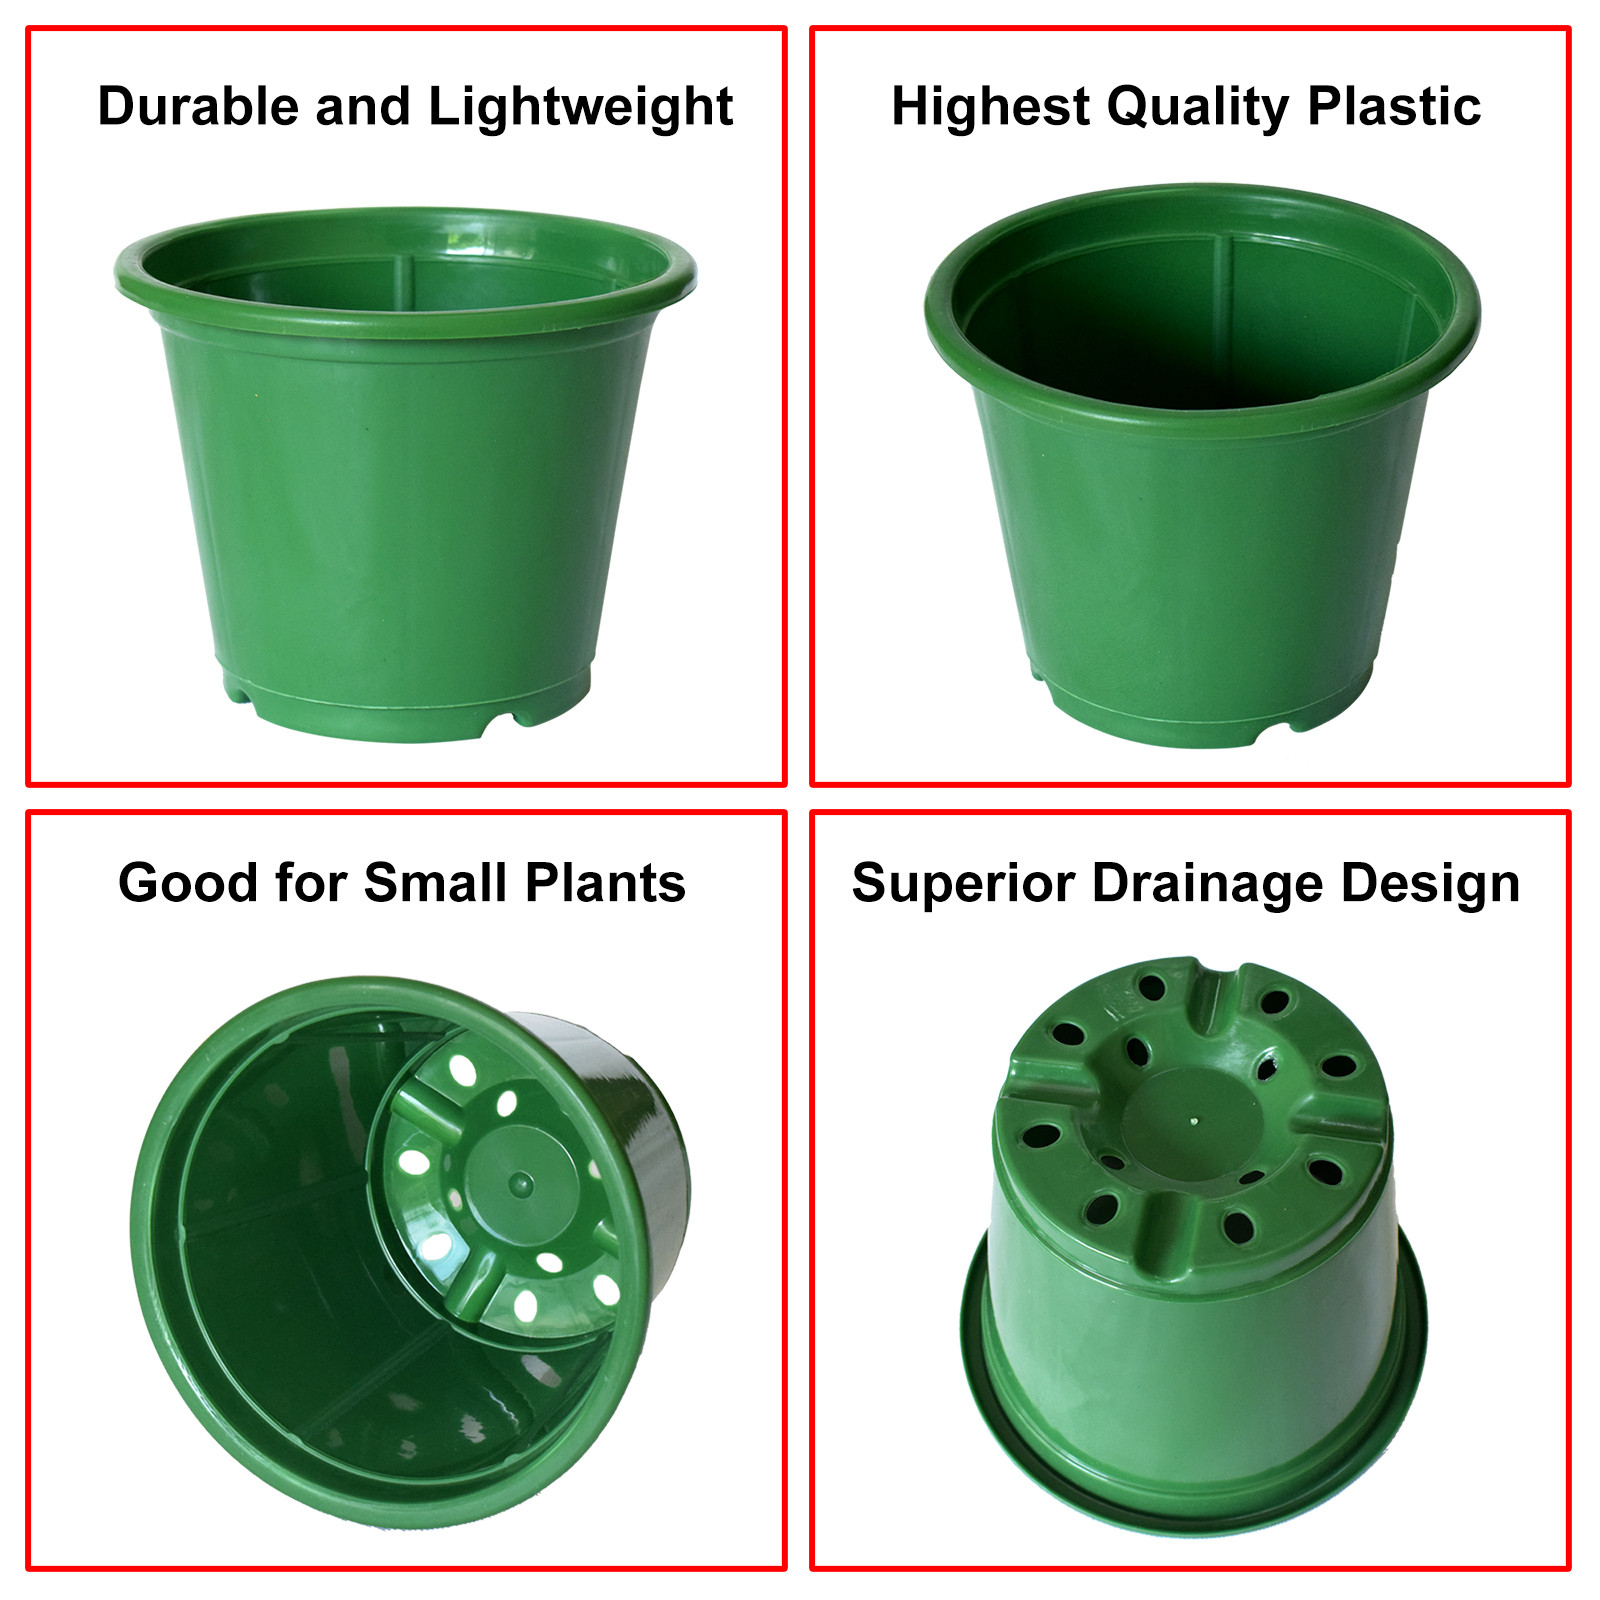 Kuber Industries Durable Plastic Flower Pot|Gamla for Indoor Home Decor & Outdoor Balcony,Garden,6